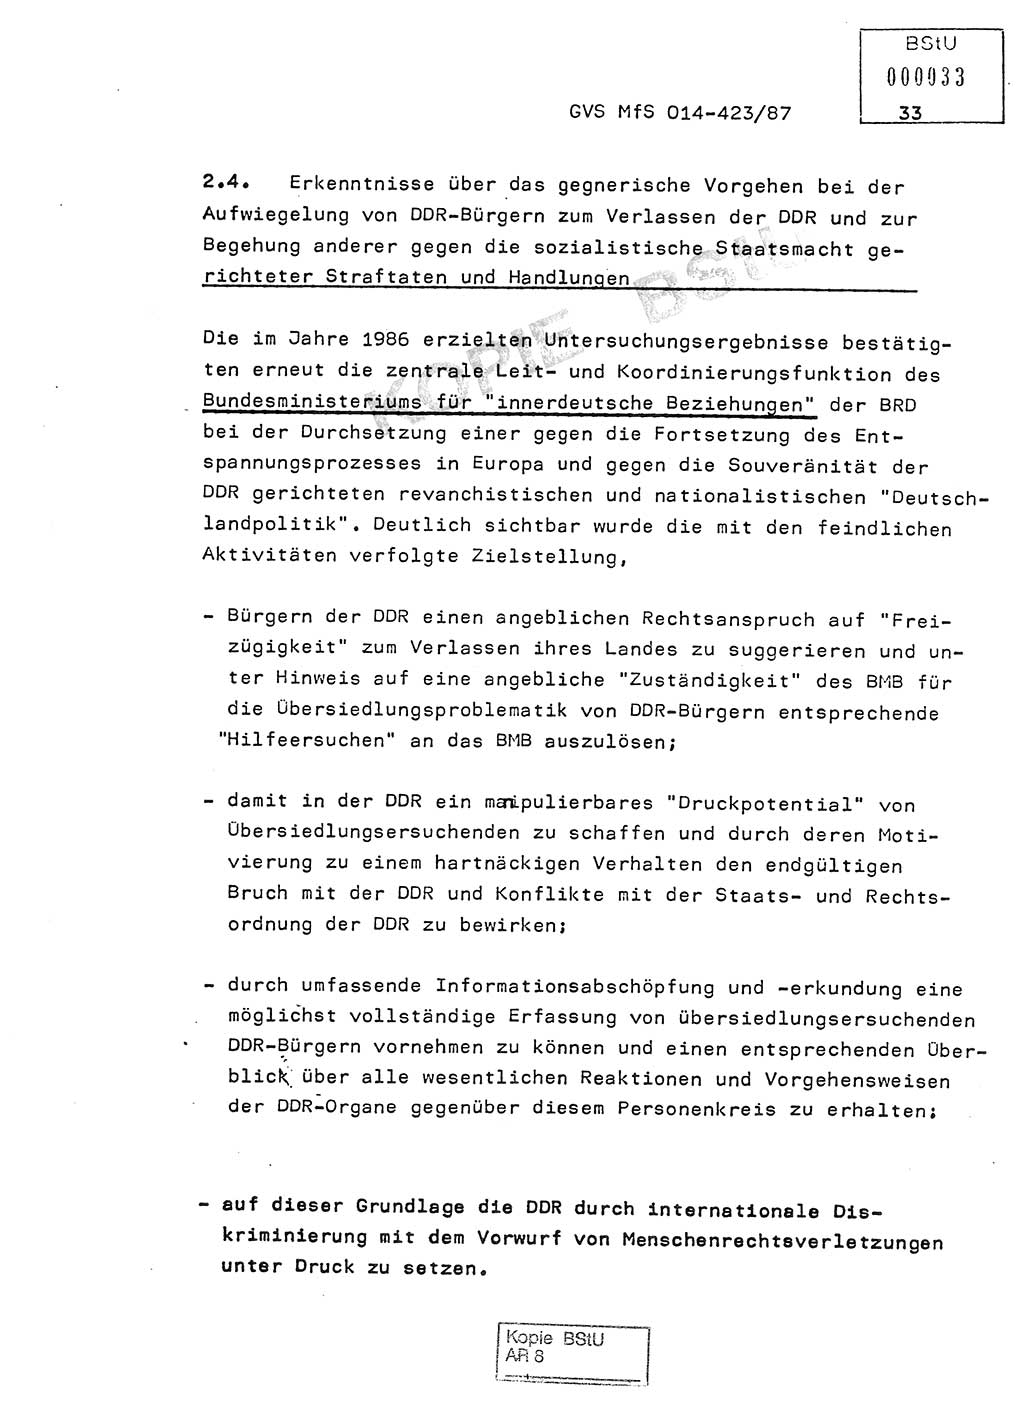 Jahresbericht der Hauptabteilung (HA) Ⅸ 1986, Einschätzung der Wirksamkeit der Untersuchungsarbeit im Jahre 1986, Ministerium für Staatssicherheit (MfS) der Deutschen Demokratischen Republik (DDR), Hauptabteilung Ⅸ, Geheime Verschlußsache (GVS) o014-423/87, Berlin 1987, Seite 33 (Einsch. MfS DDR HA Ⅸ GVS o014-423/87 1986, S. 33)